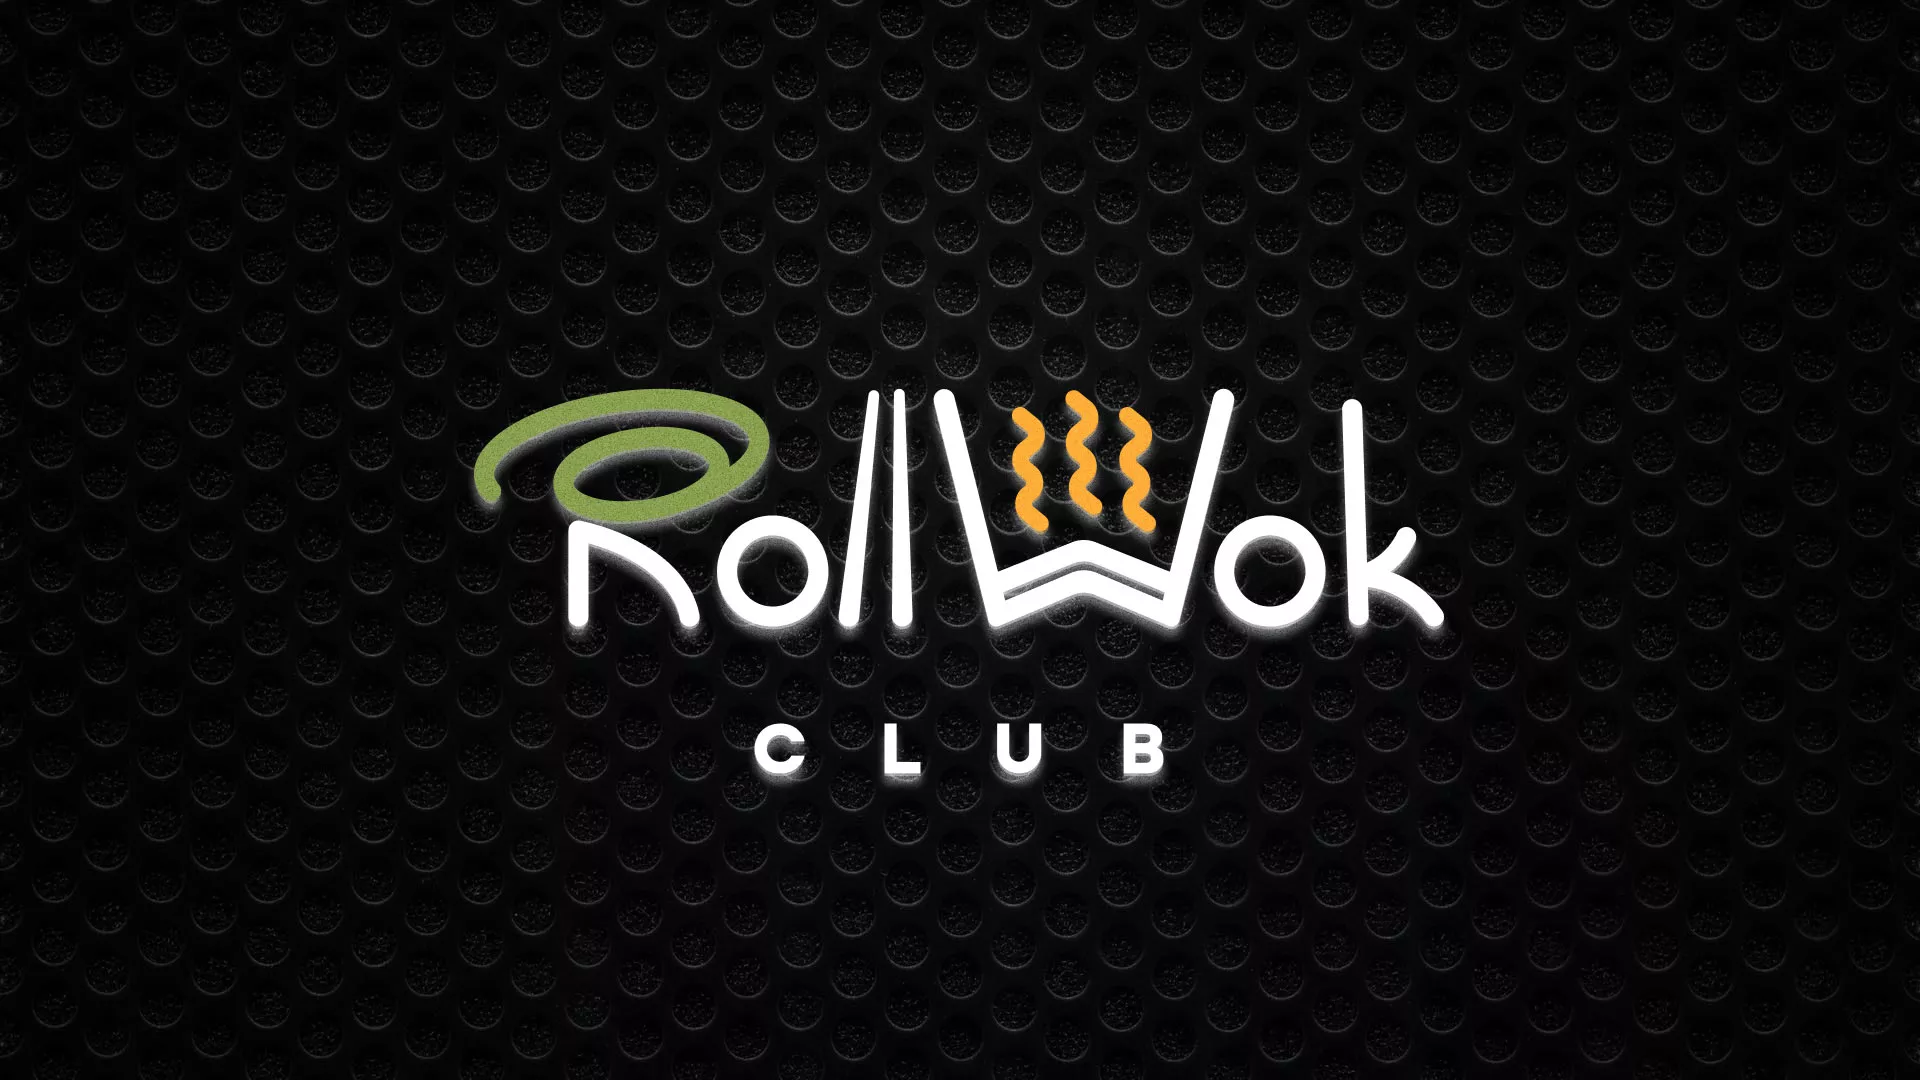 Брендирование торговых точек суши-бара «Roll Wok Club» в Твери